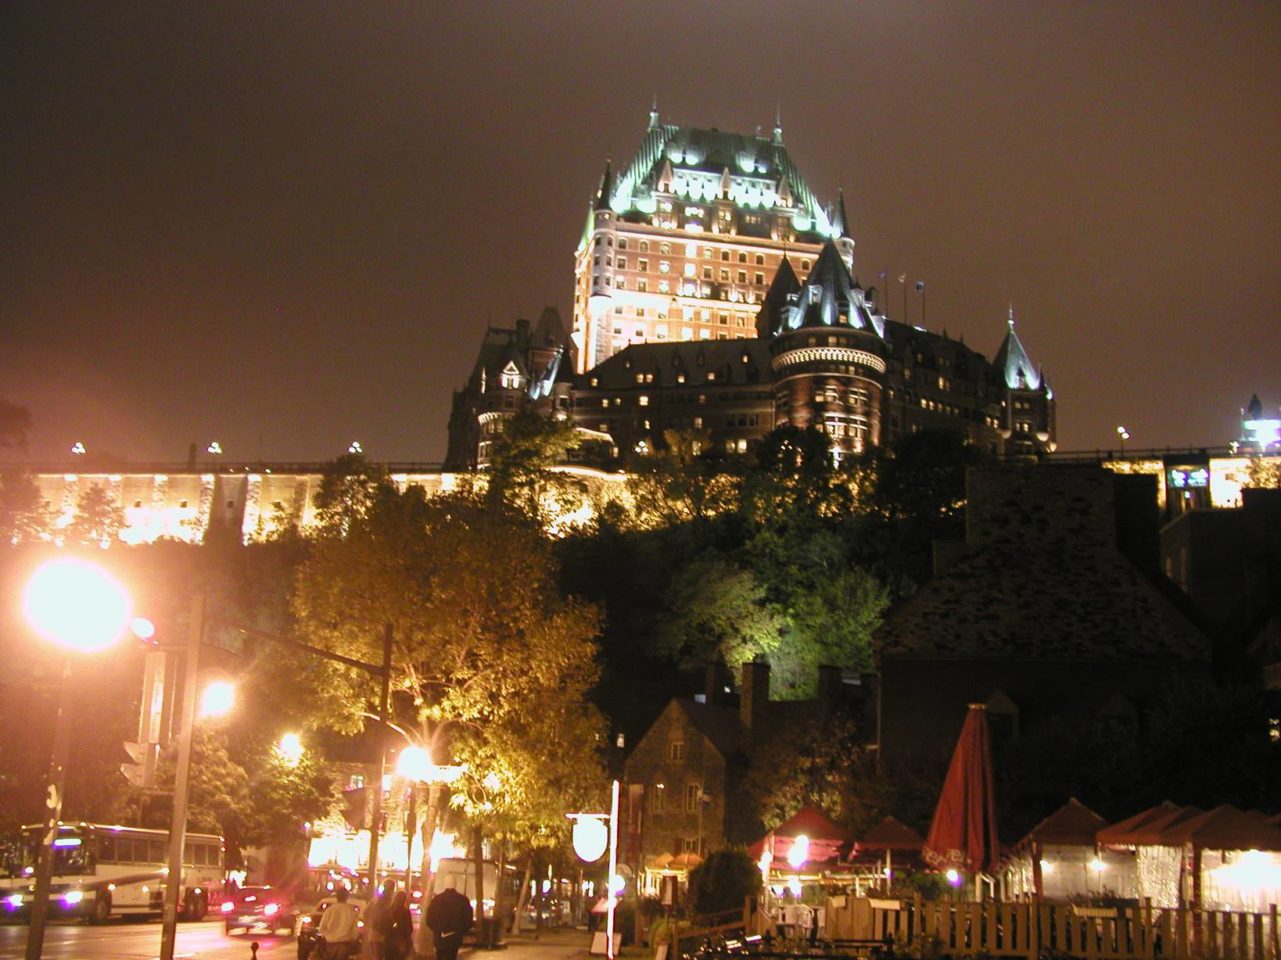 Fairmont Le Chateau Frontenac in Quebec City, Quebec, Canada